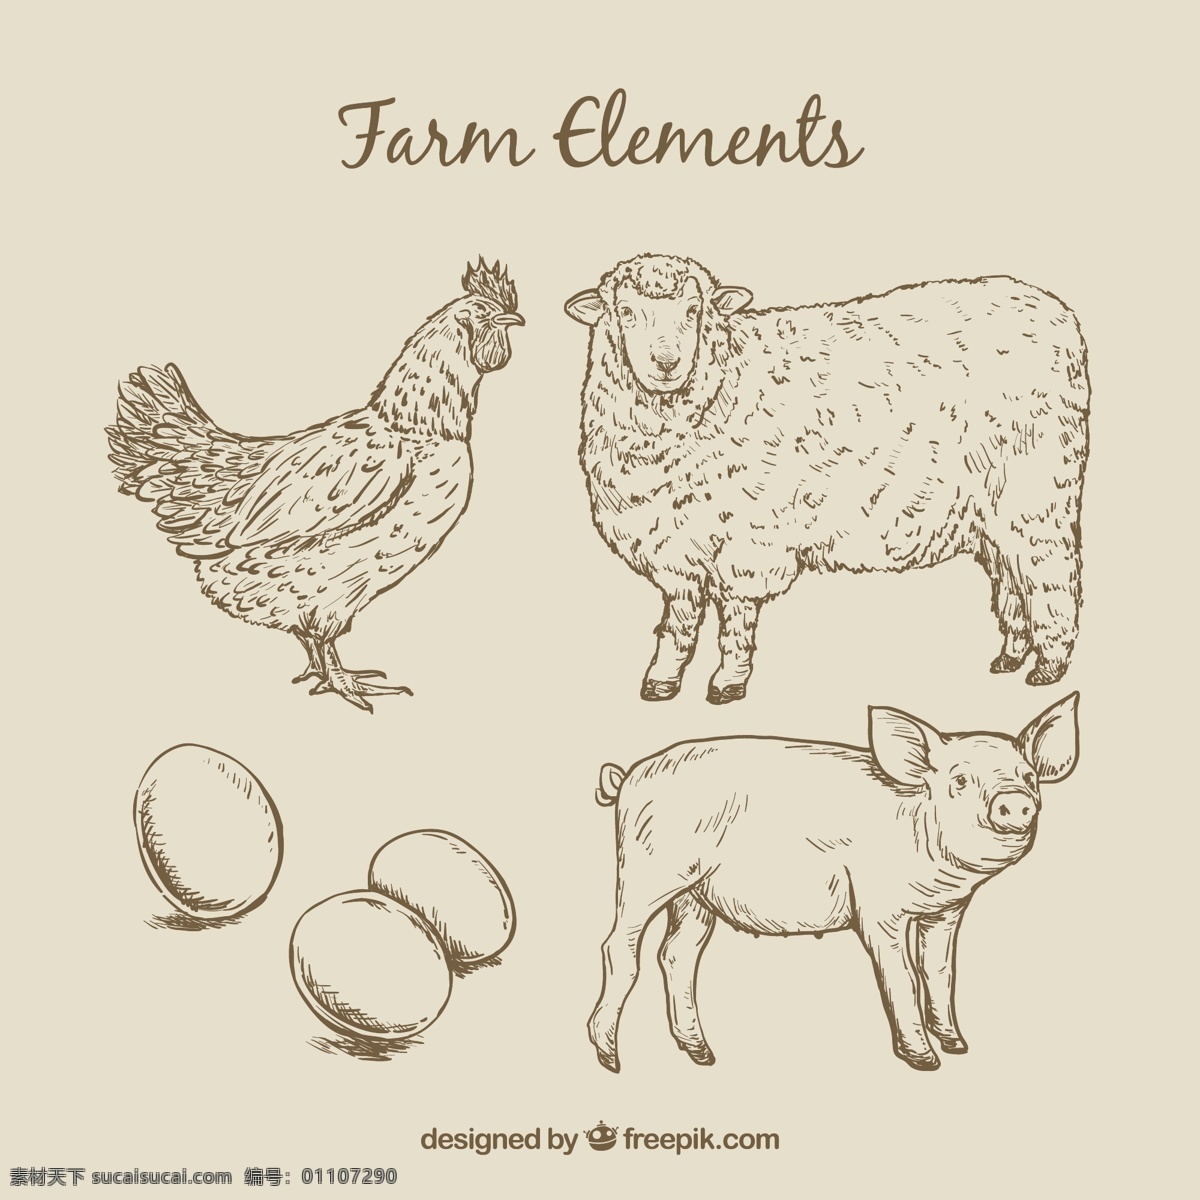 素描 农场 动物 蛋 手 自然 手工绘制 绵羊 蔬菜 鸡 生态 猪 有机 绘图 环境 农民 地面 农场动物 生态友好 粉色